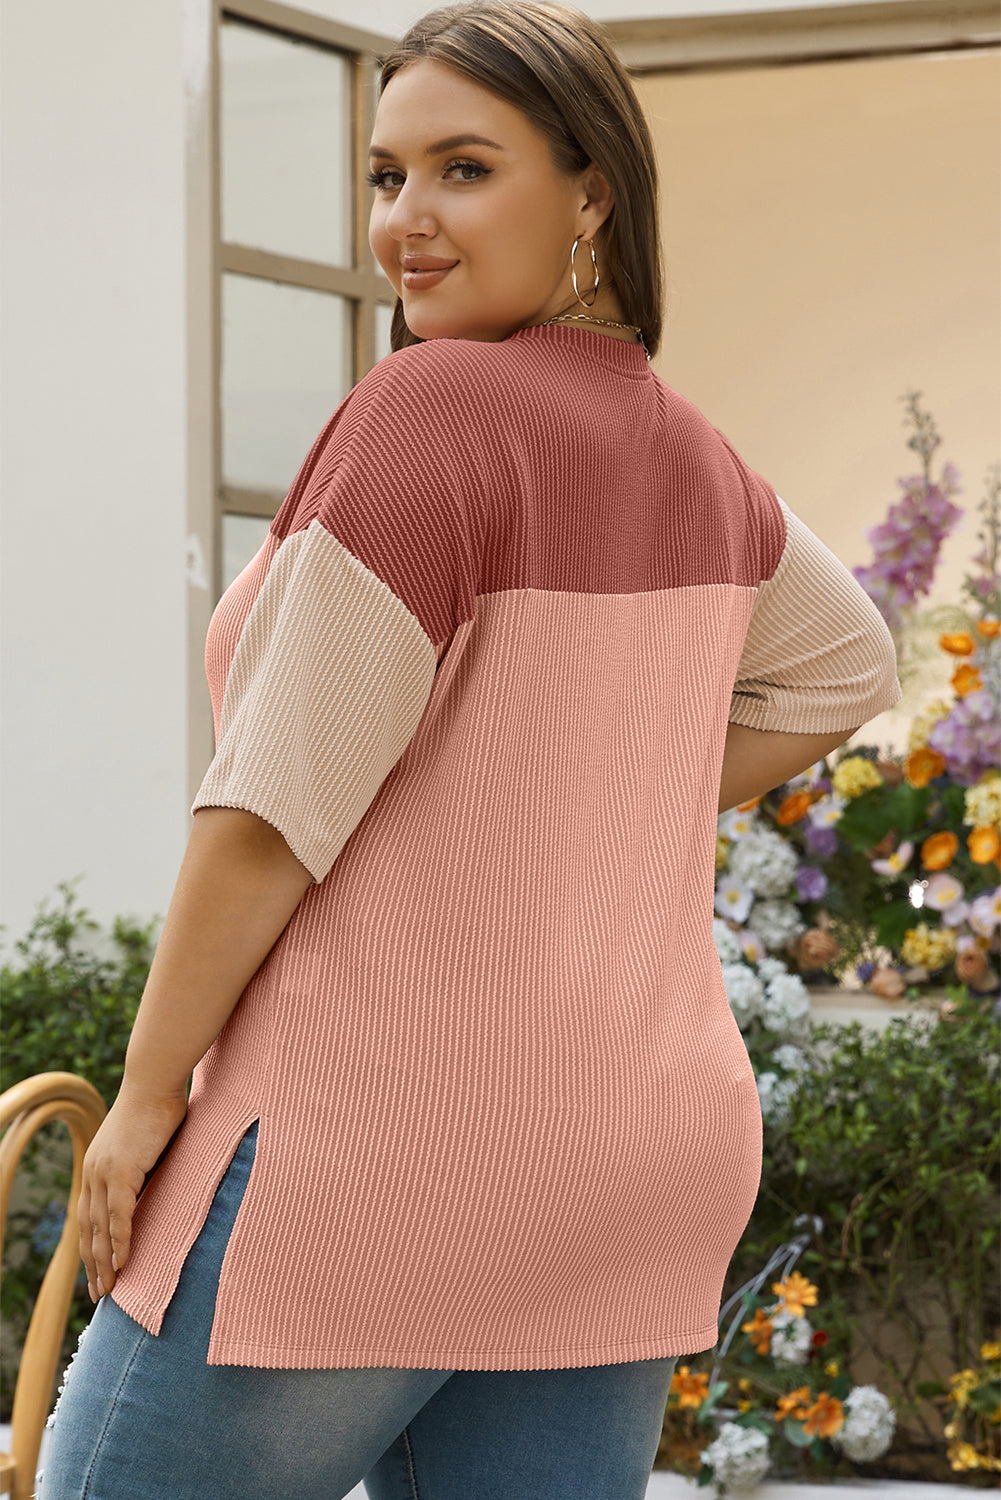 Ružičasto ružičasta rebrasta Colorblock majica velike veličine